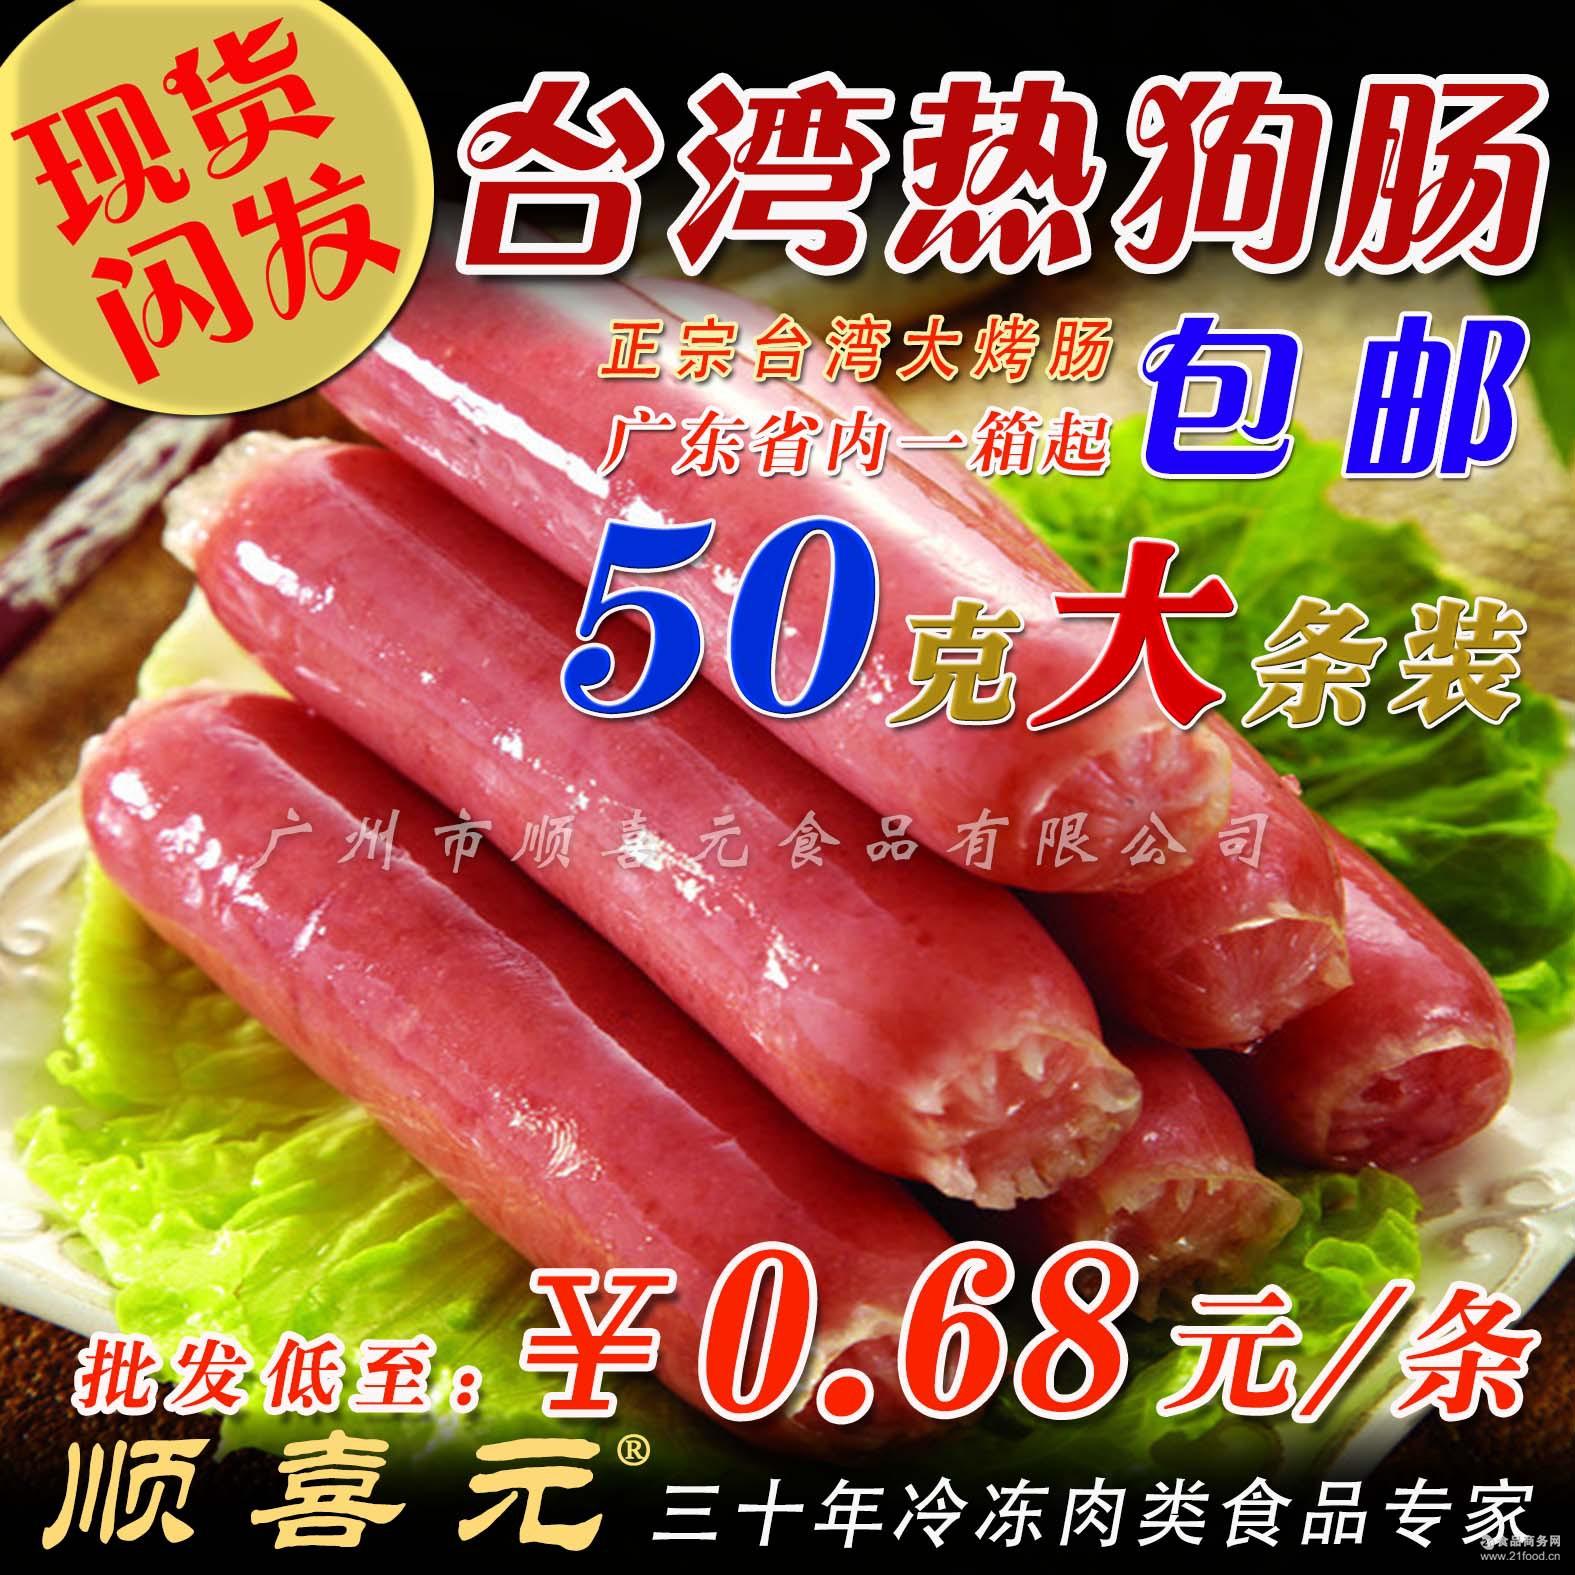 台湾风味热狗肠 台式香肠 烧烤肠火腿肠烤香肠 约200条 广东包邮-阿里巴巴